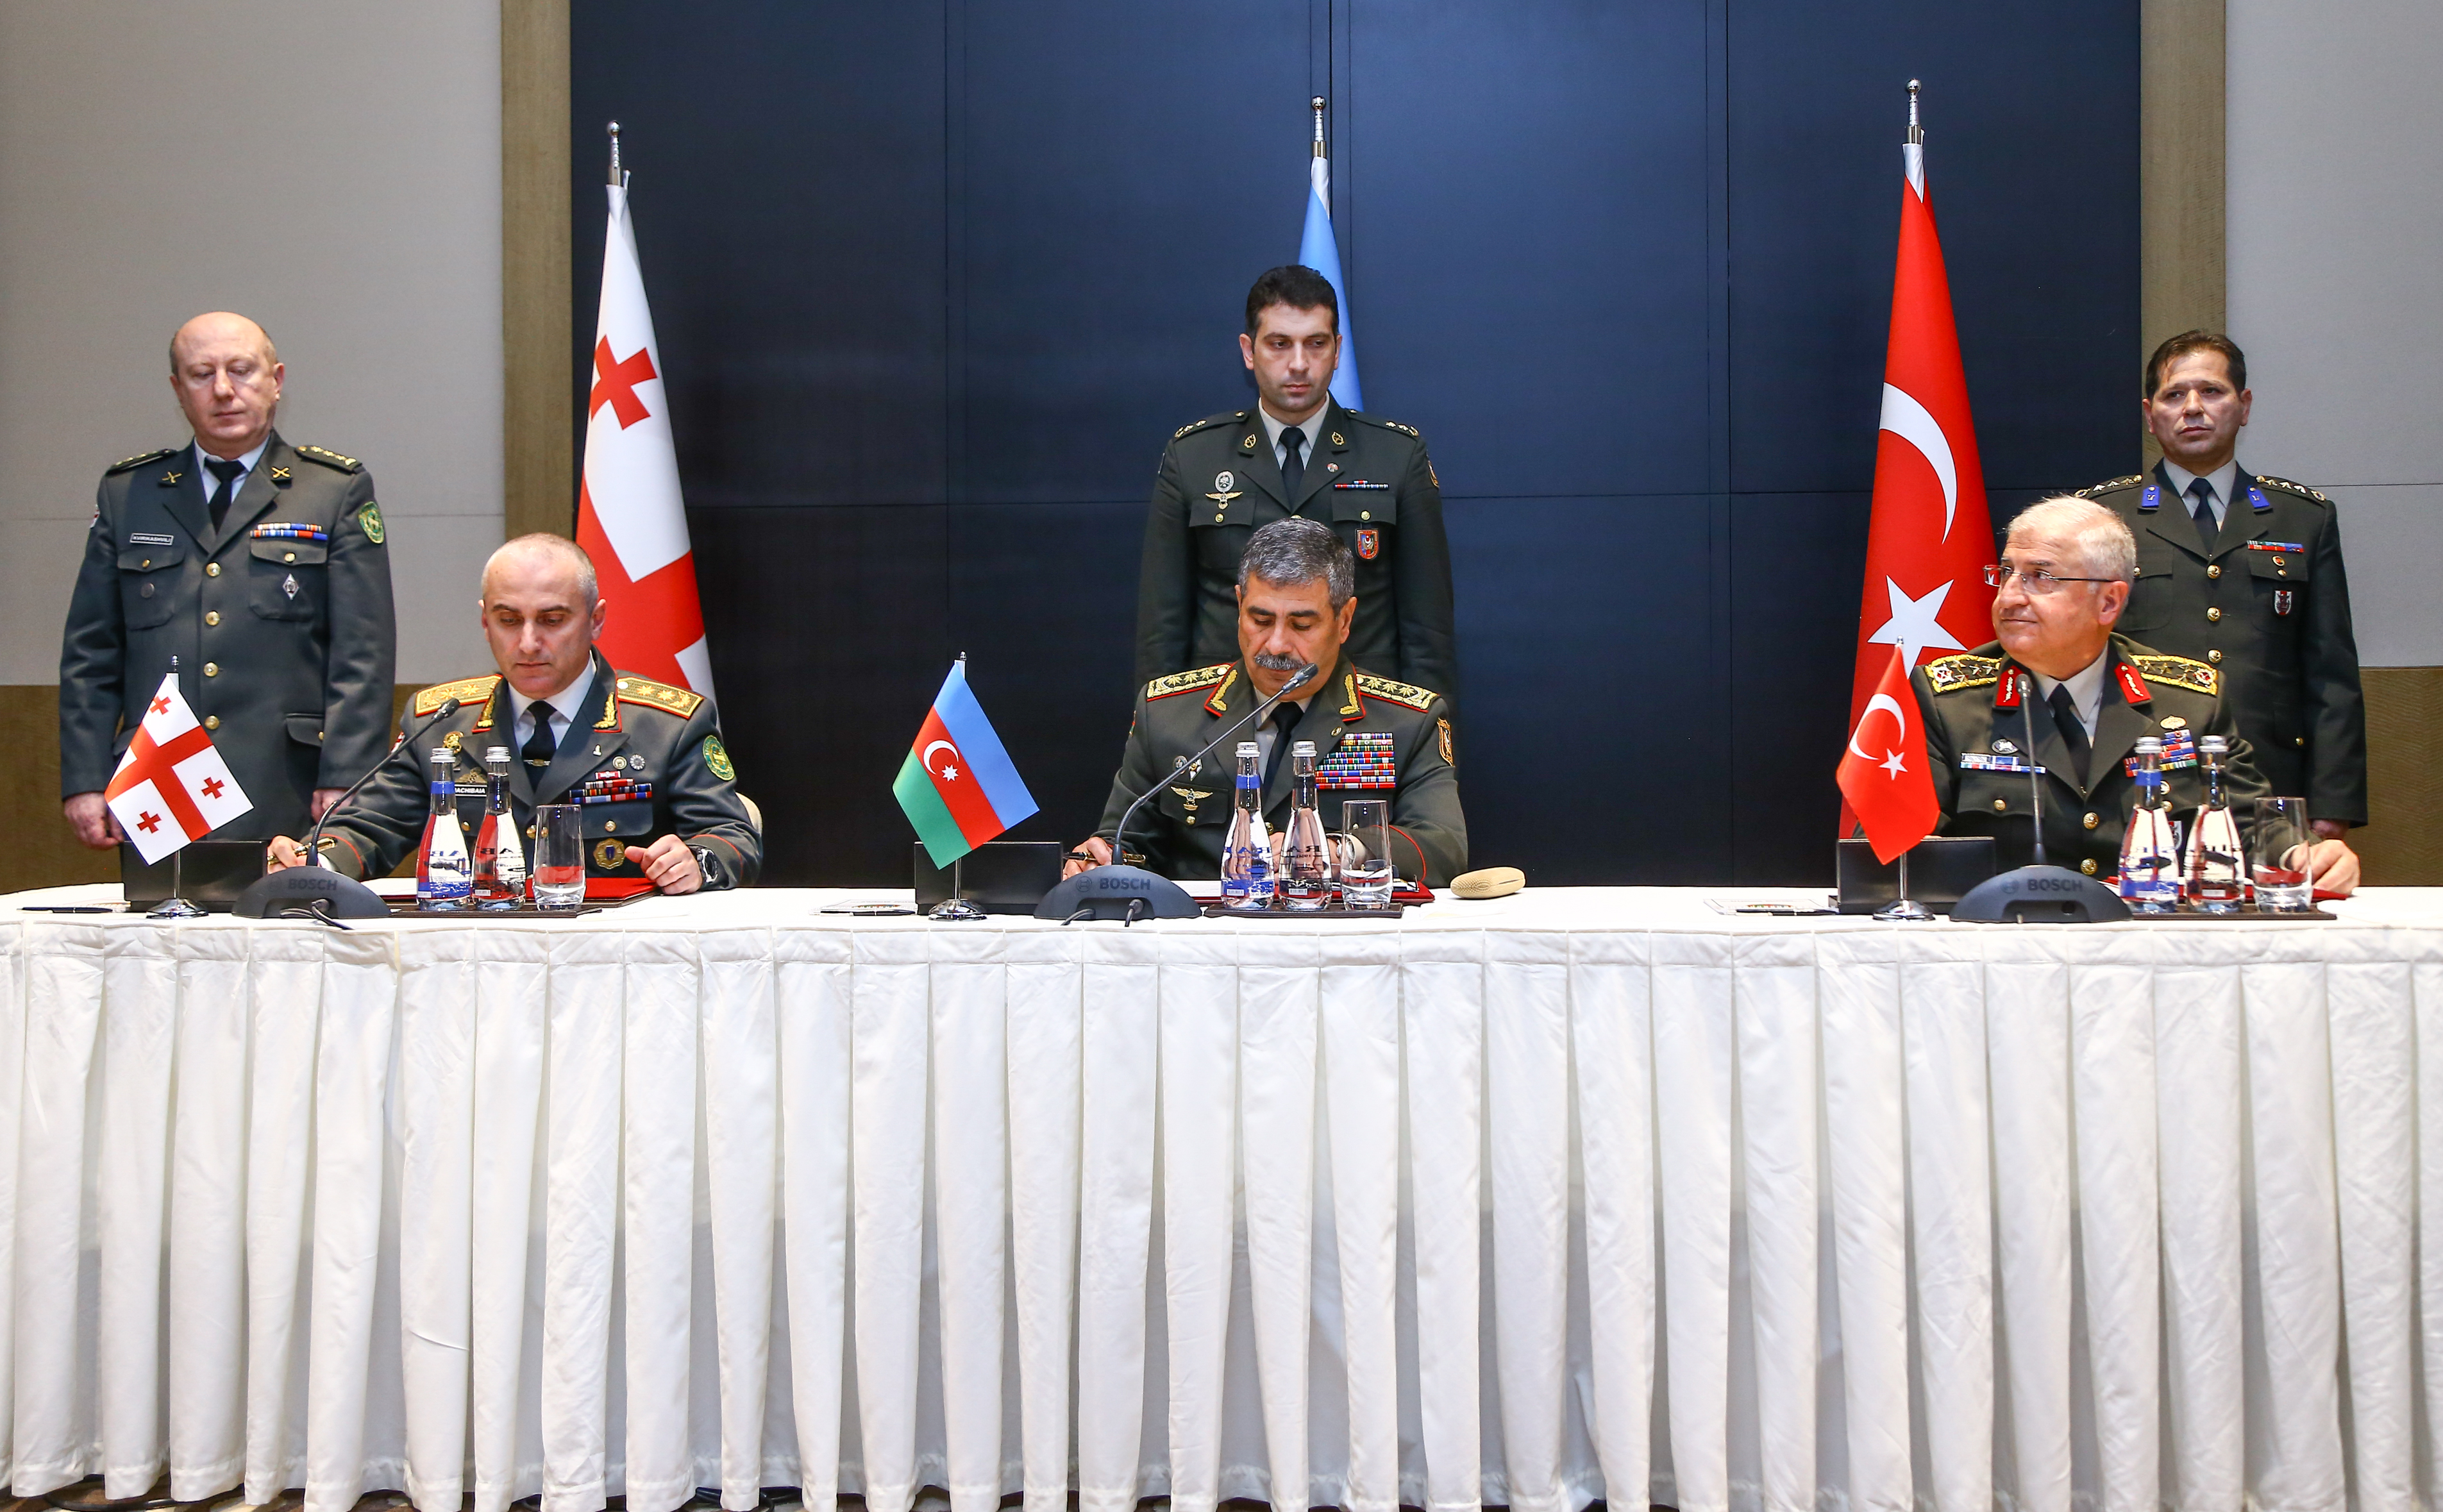 Թուրքիան, Ադրբեջանը և Վրաստանն առաջիկայում համատեղ զորավարժություն կանցկացնեն